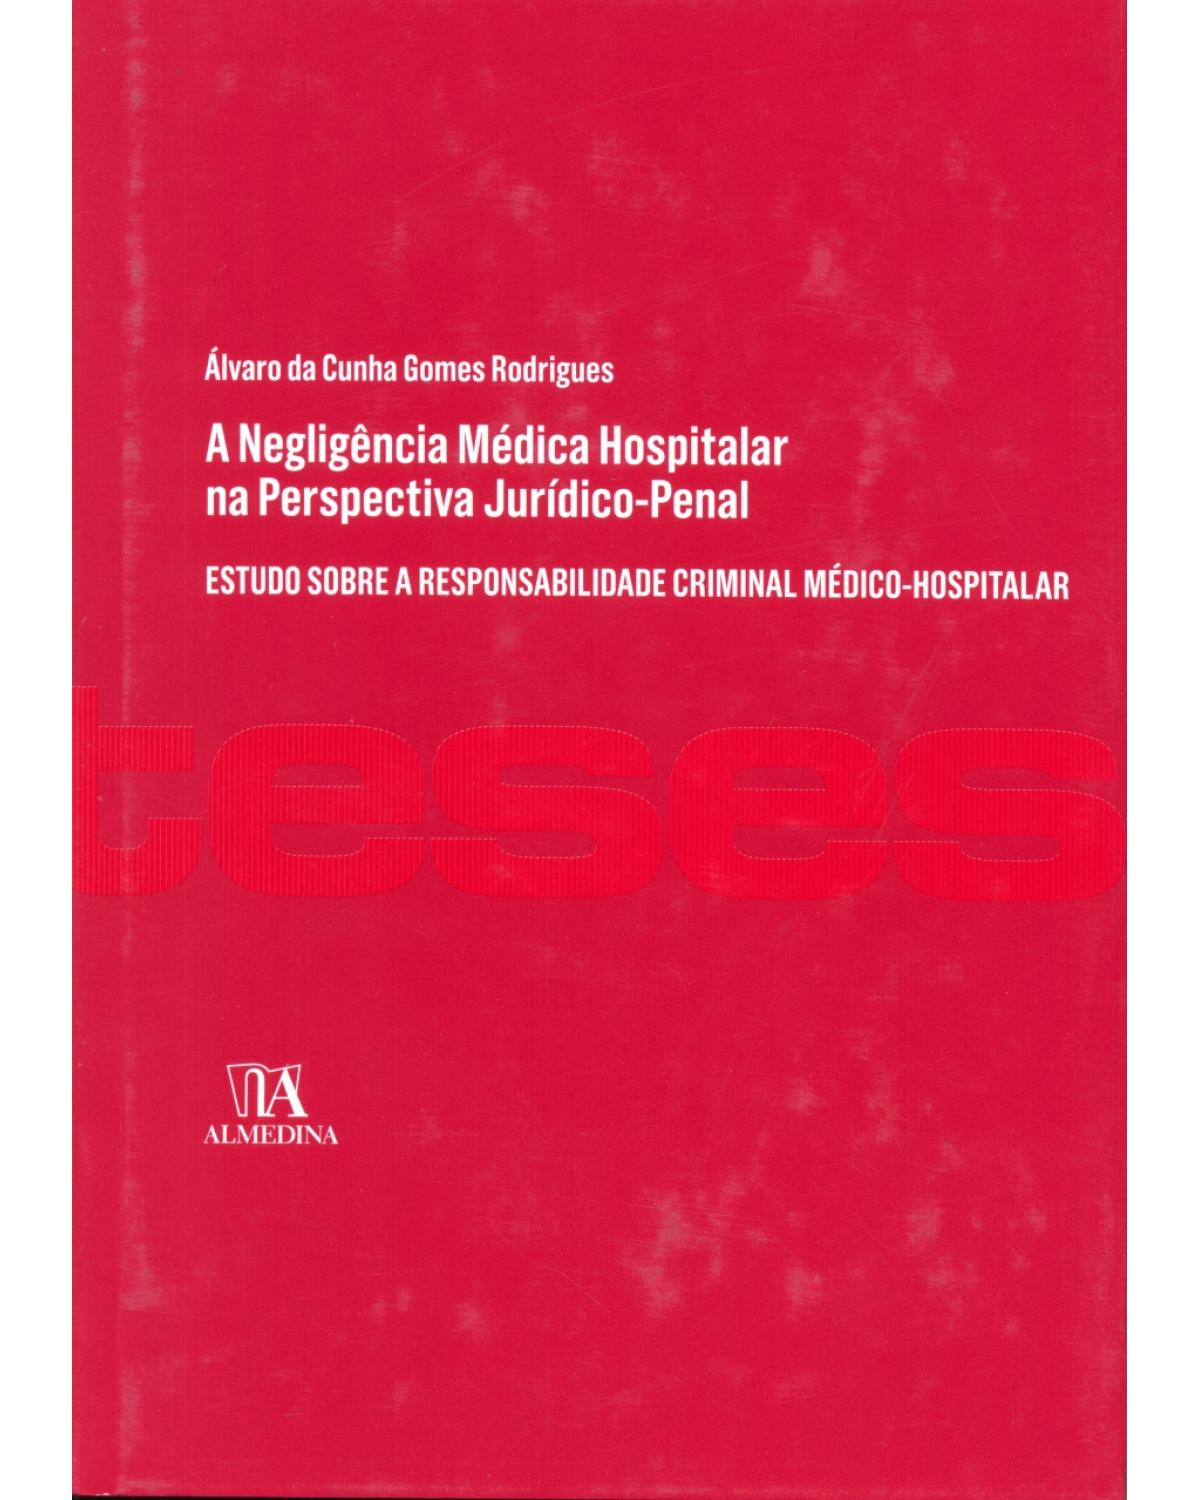 A negligência médica hospitalar na perspectiva jurídico-penal - estudo sobre a responsabilidade criminal médico-hospitalar - 1ª Edição | 2013